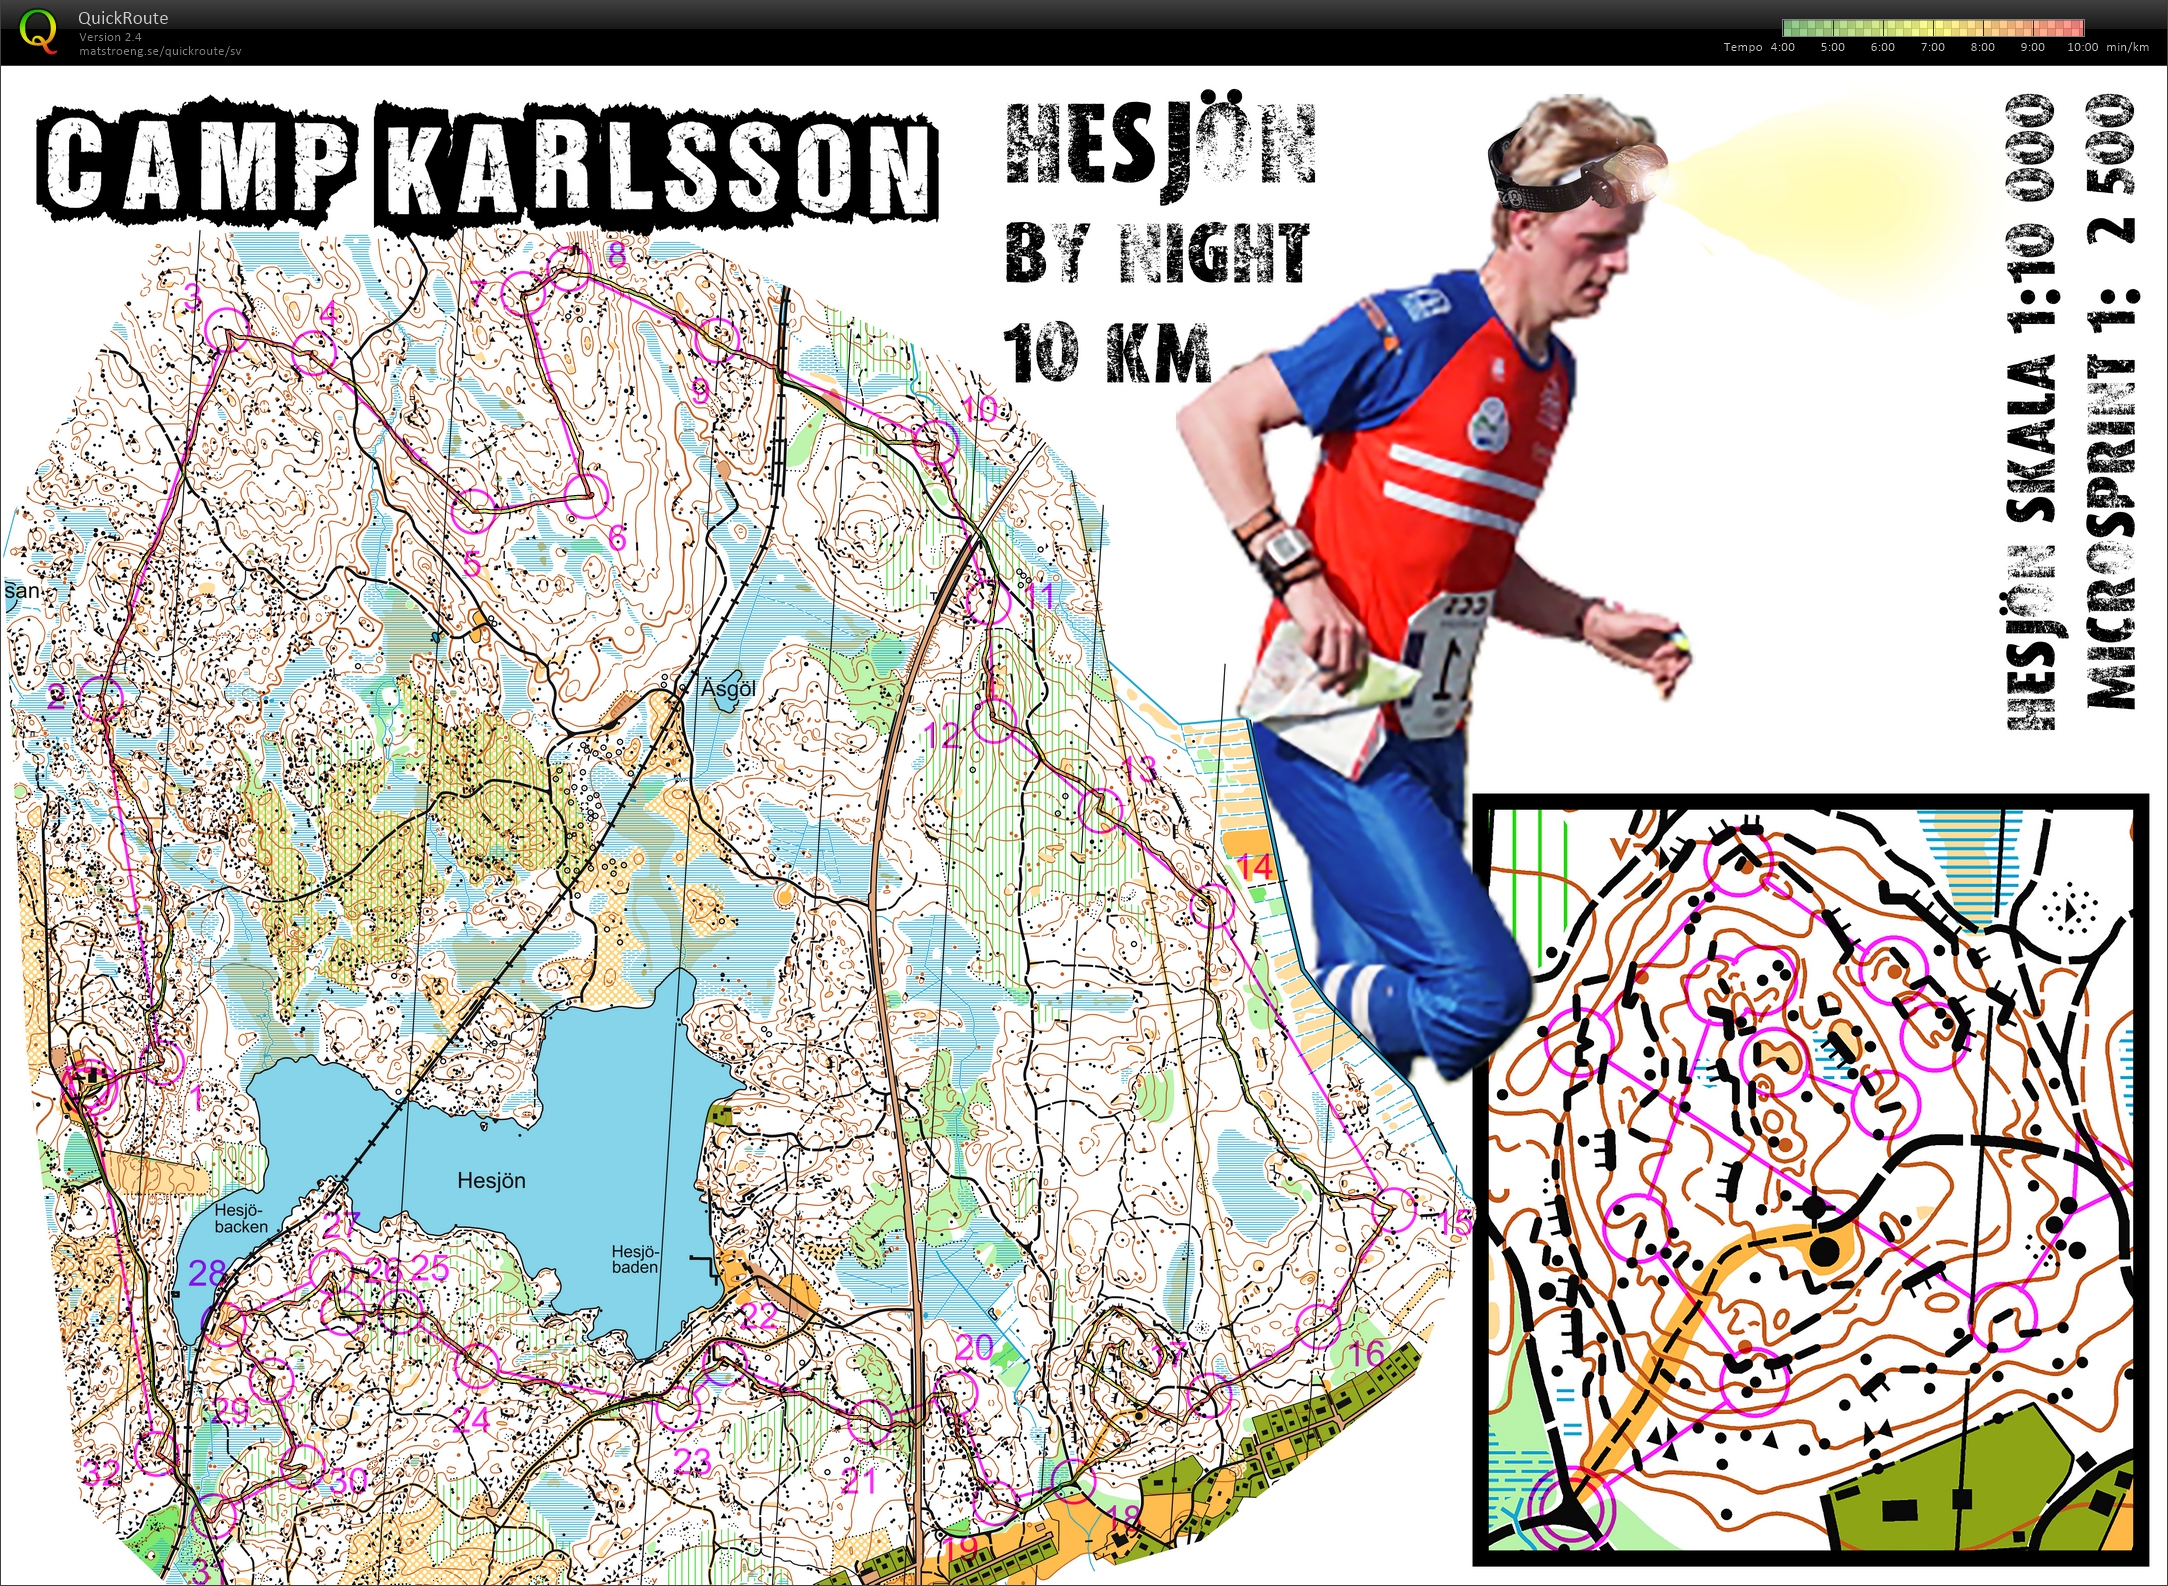 Camp Karlsson #2: Hesjön by Night (11/12/2015)